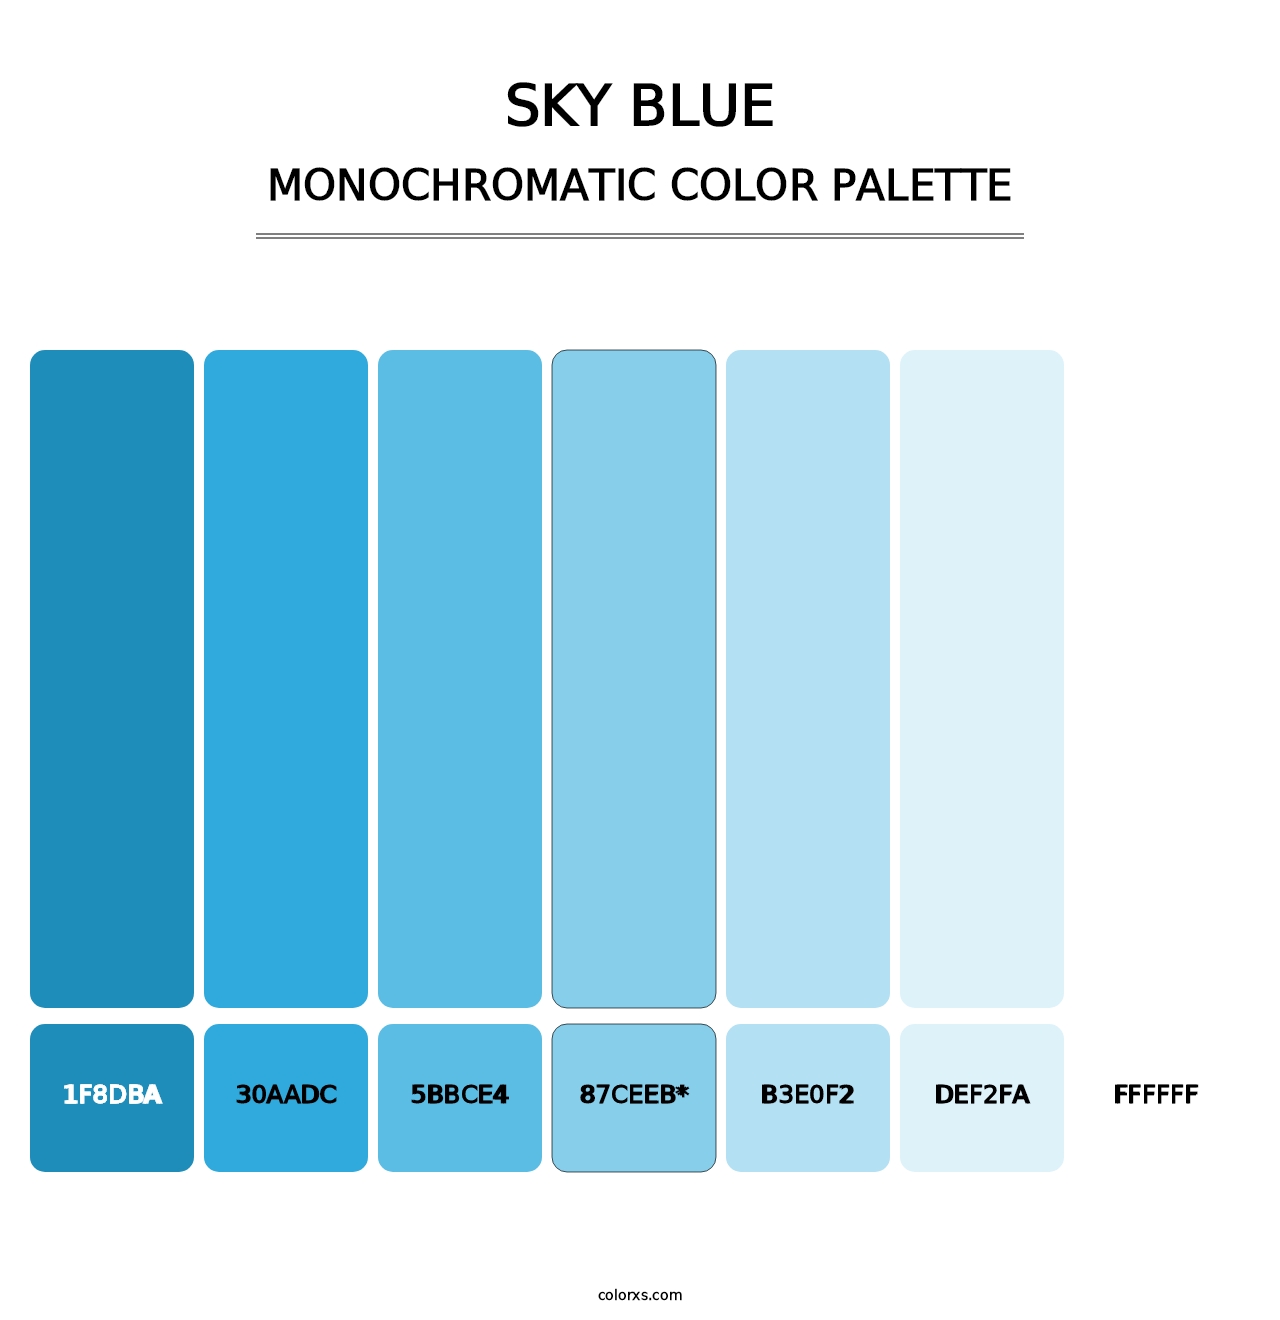 Sky blue - Monochromatic Color Palette